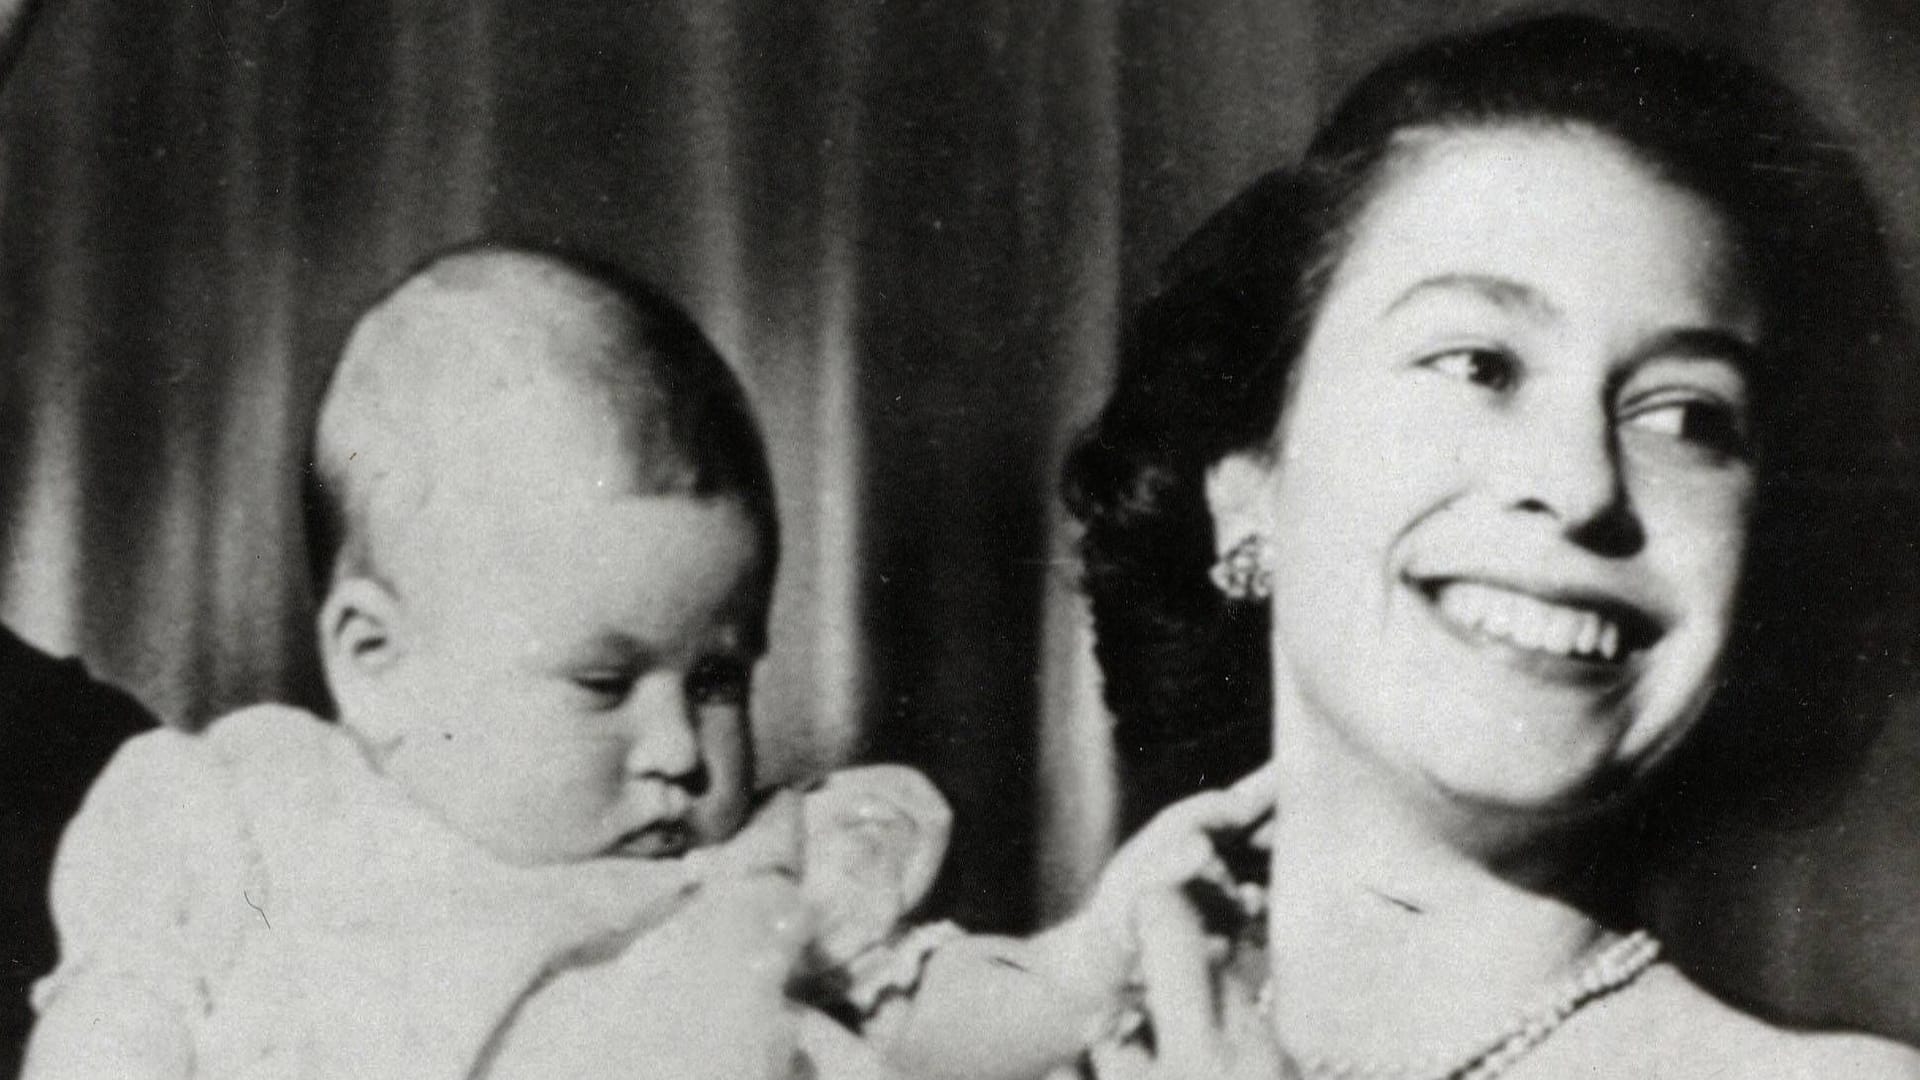 Als erstes Kind von Prinz Philip und Königin Elizabeth II. kam Charles am 14. November 1948 auf die Welt.